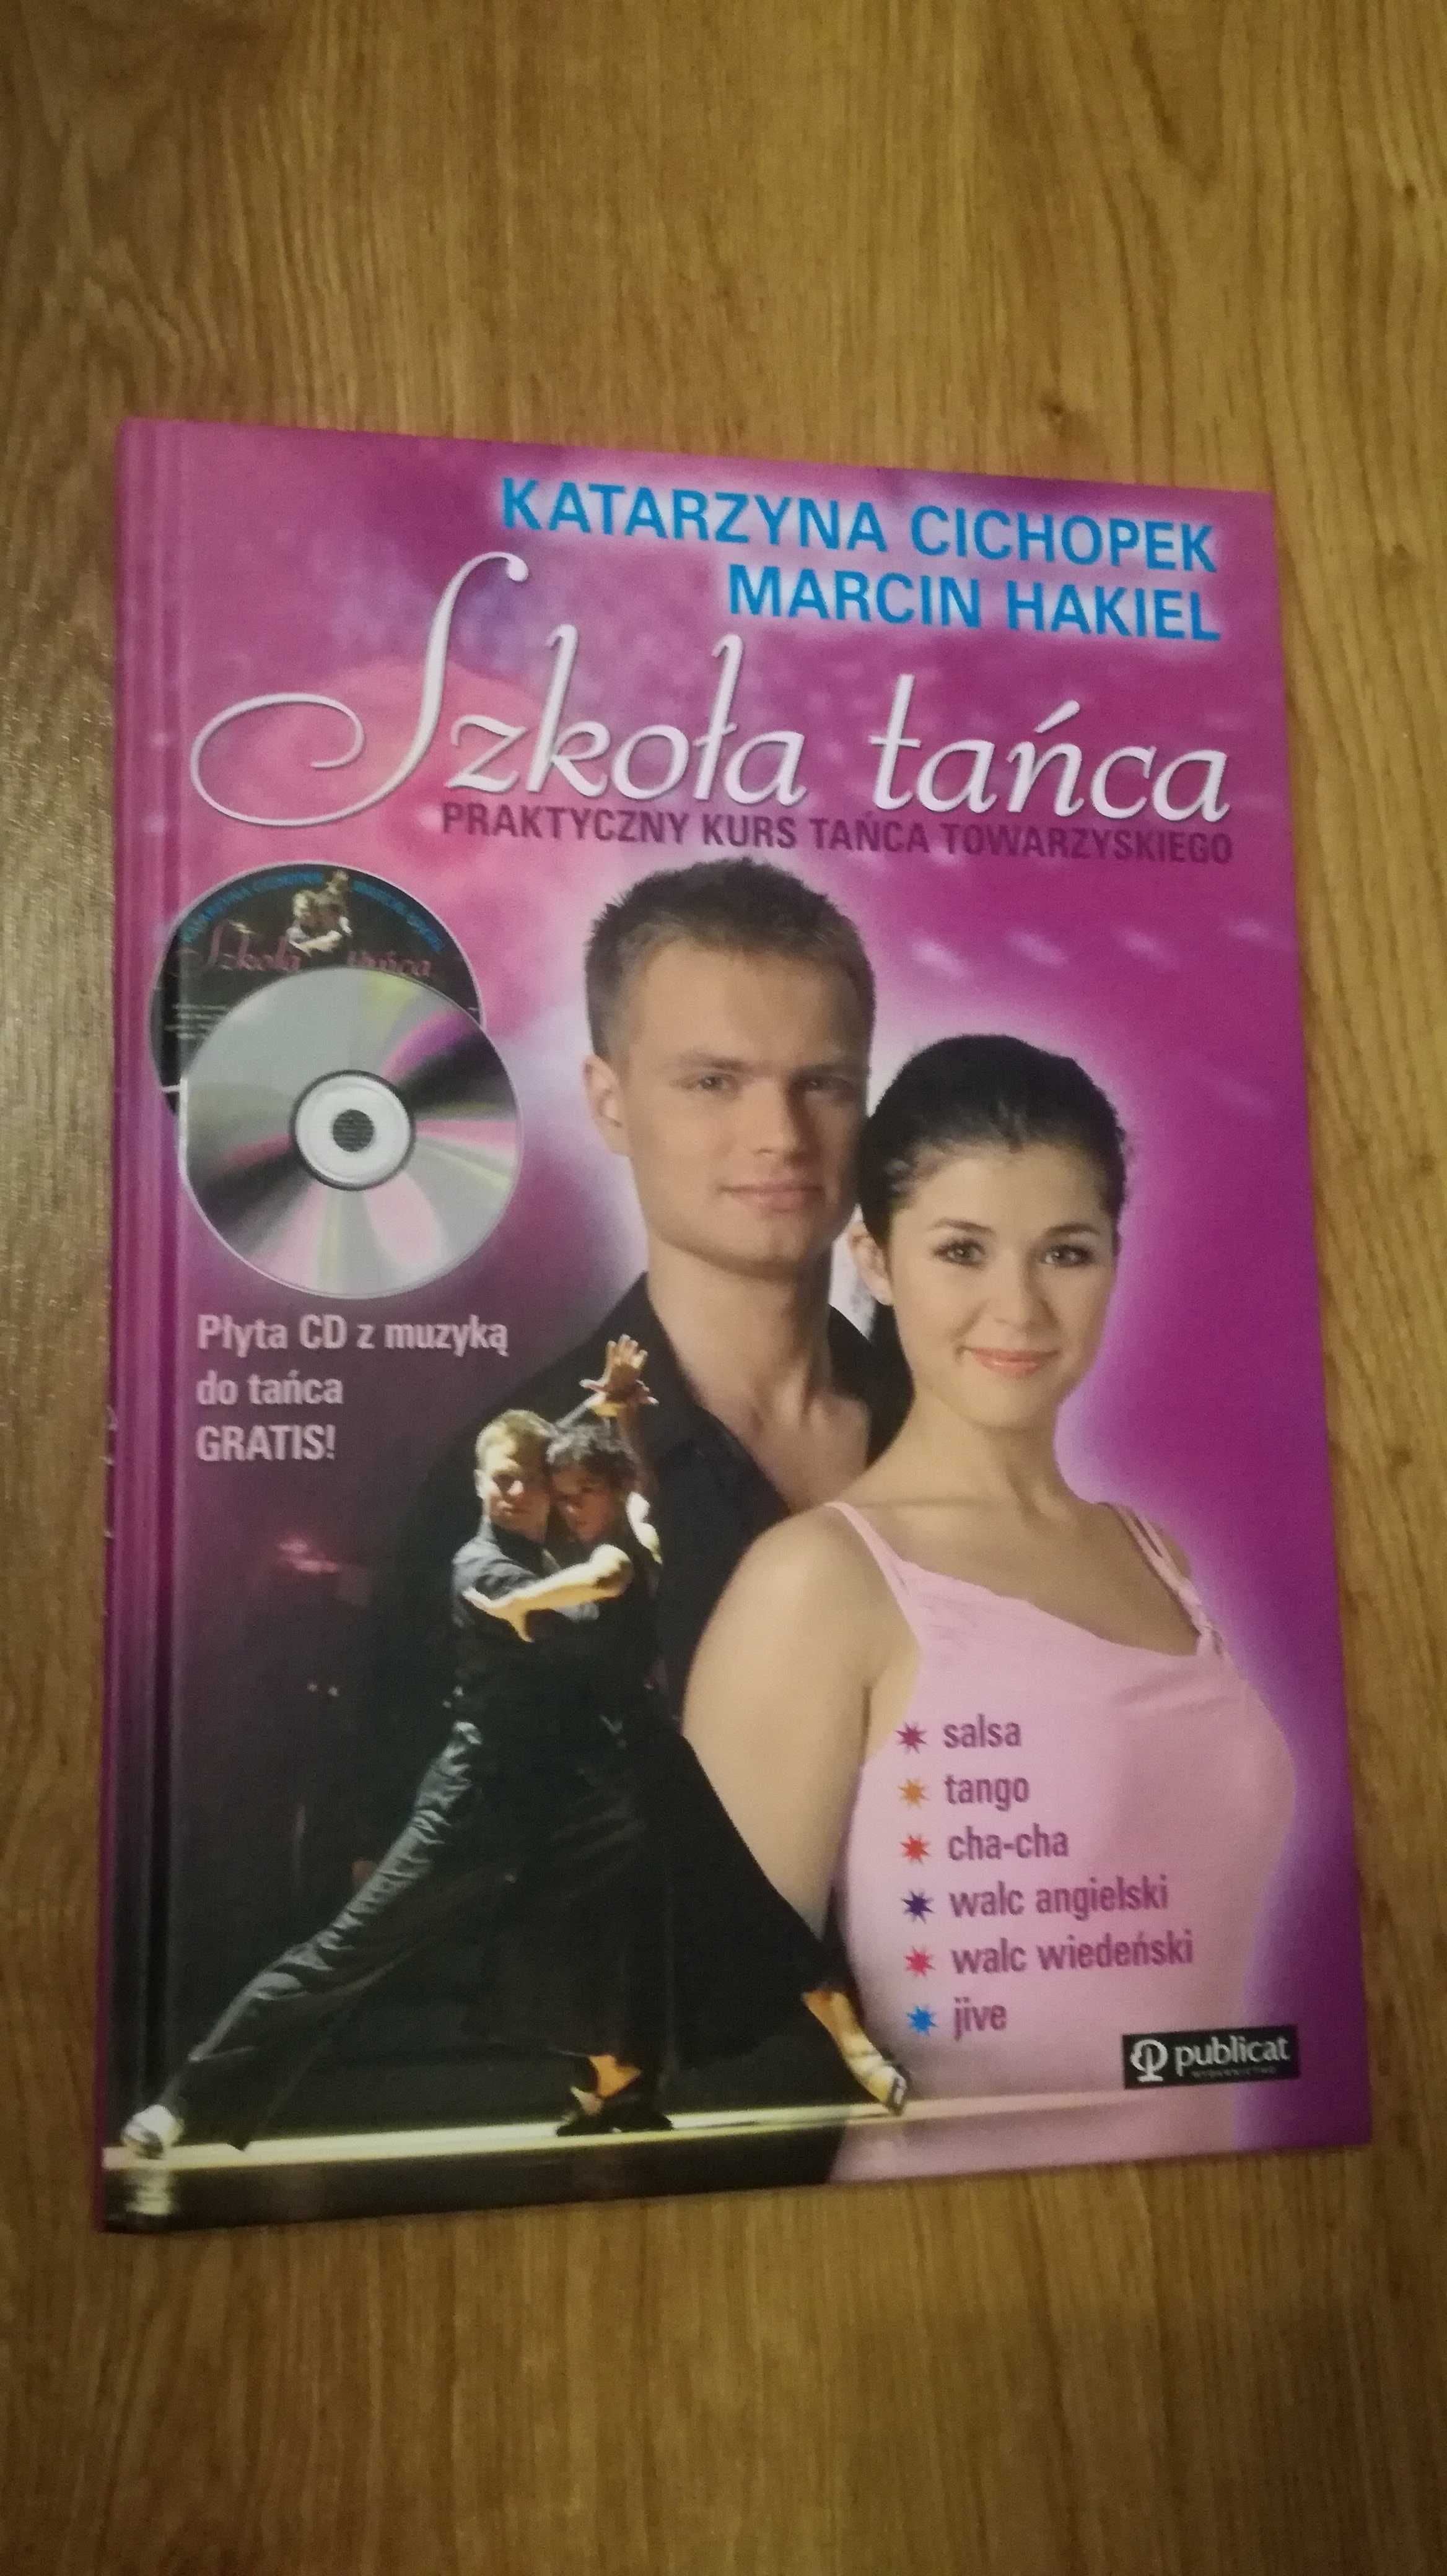 Szkoła tańca - książka Katarzyna Cichopek i Marcin Hakiel - NOWA